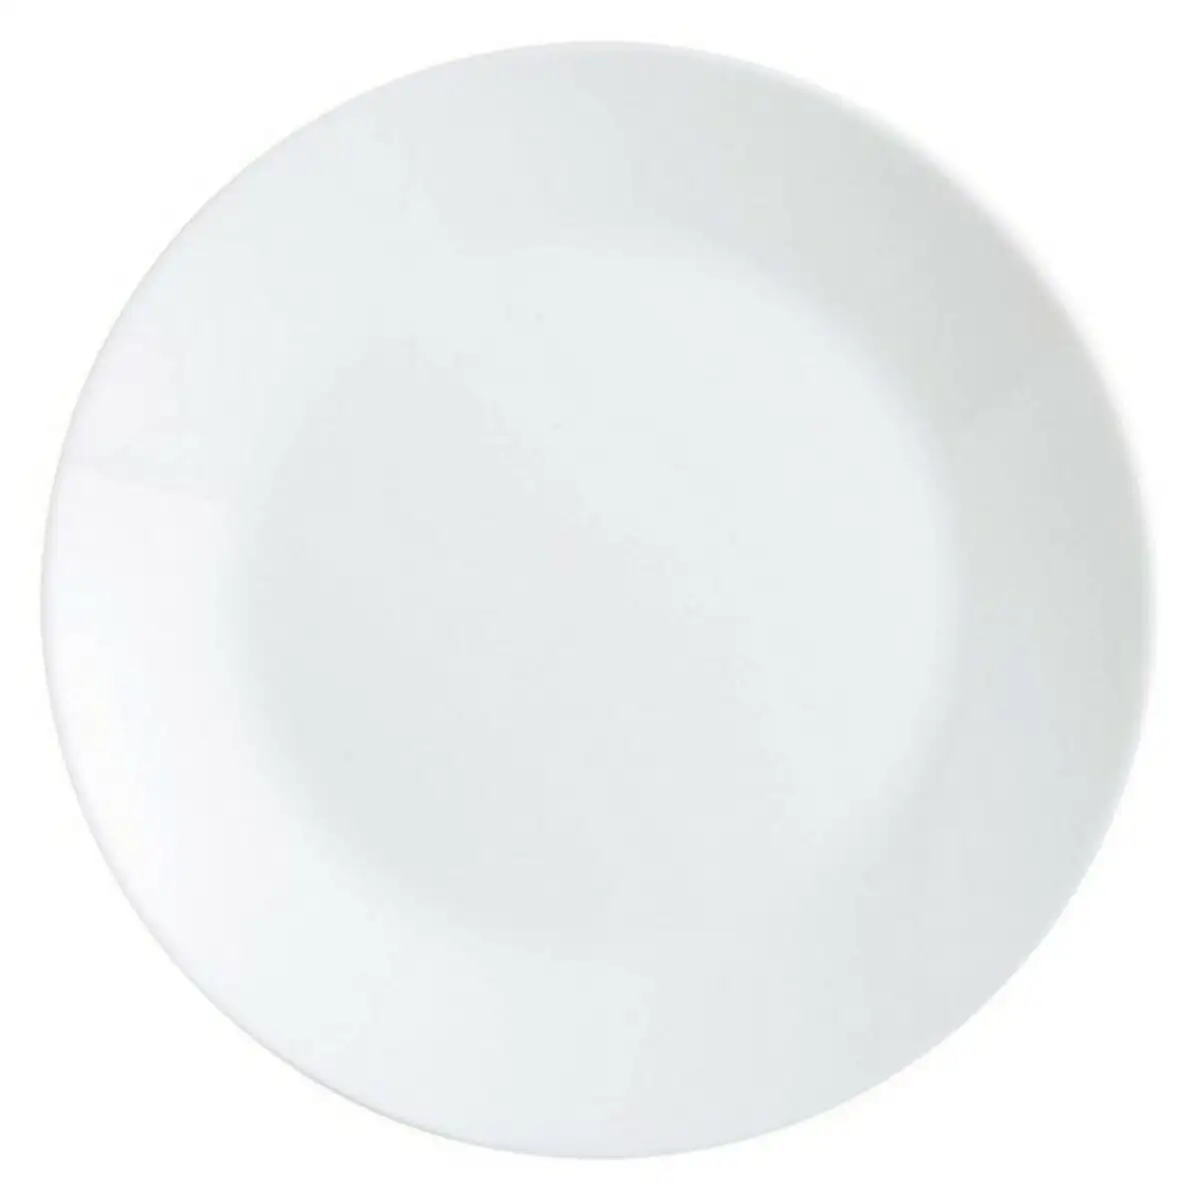 Service de vaisselle arcopal zelie blanc verre 12 pcs _3439. Bienvenue sur DIAYTAR SENEGAL - Où le Shopping est une Affaire Personnelle. Découvrez notre sélection et choisissez des produits qui reflètent votre unicité et votre individualité.